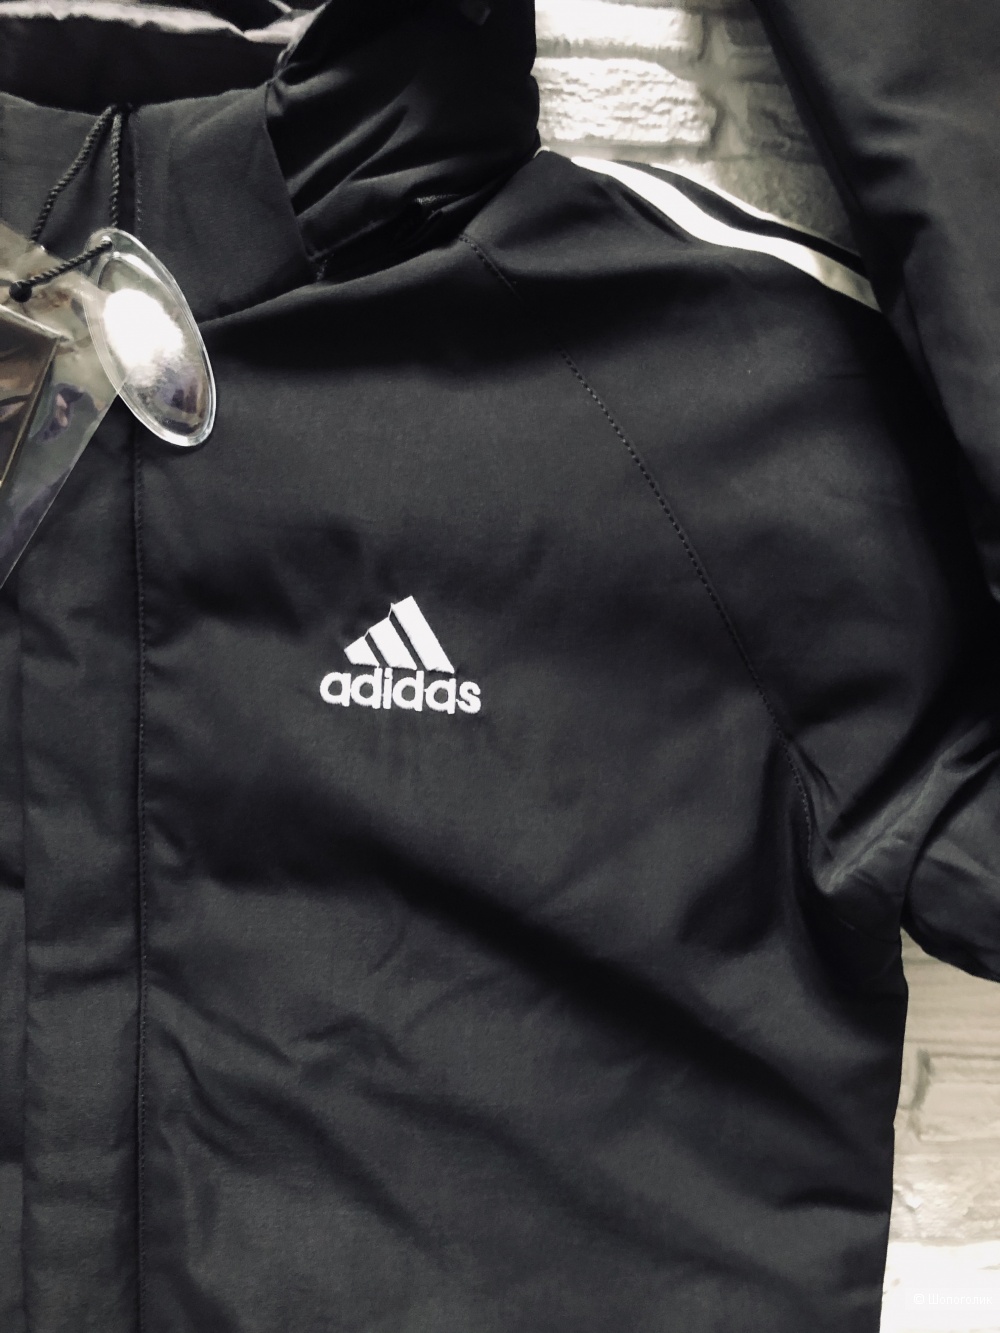 Мужская куртка Adidas размер 48-52